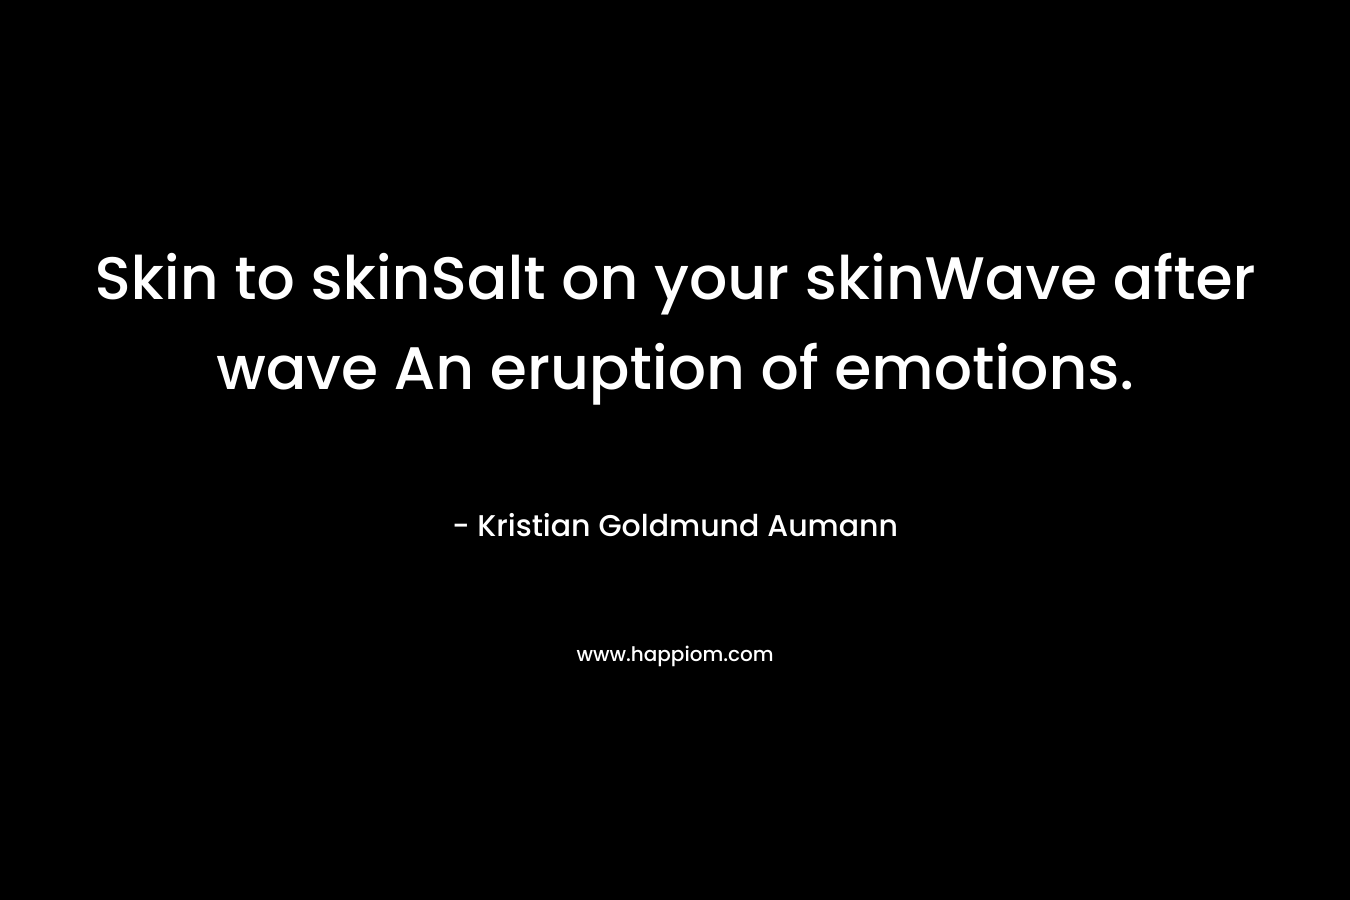 Skin to skinSalt on your skinWave after wave An eruption of emotions.